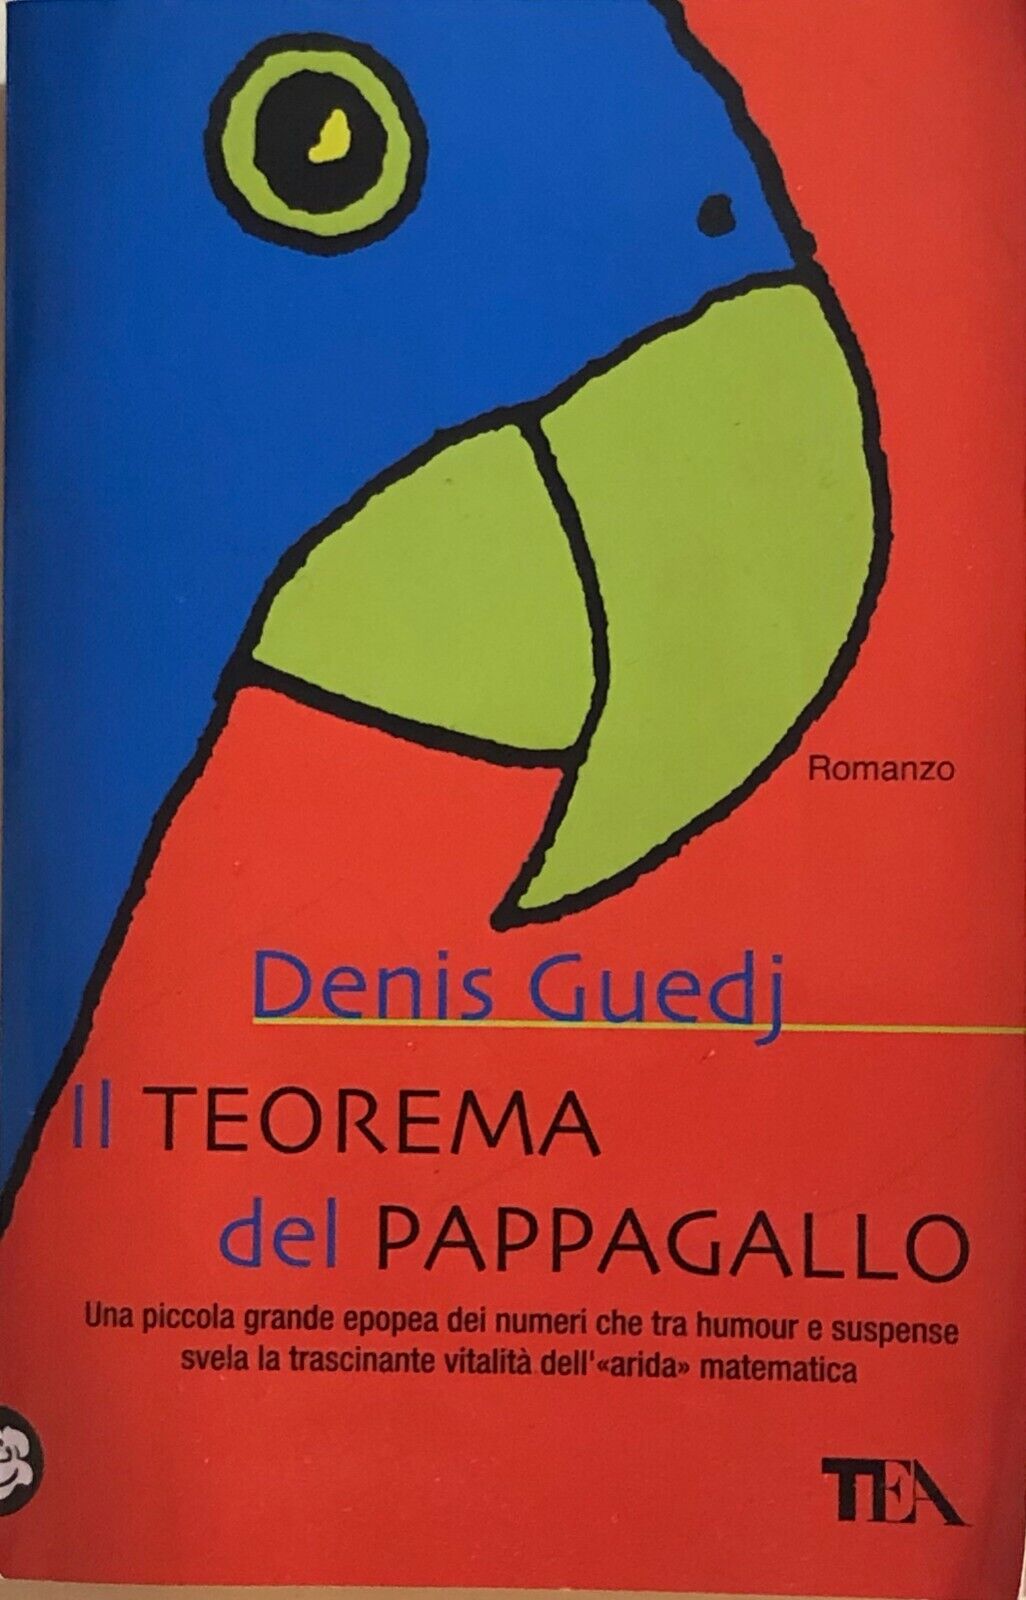 Il teorema del pappagallo di Denis Guedj, 2014, Tea